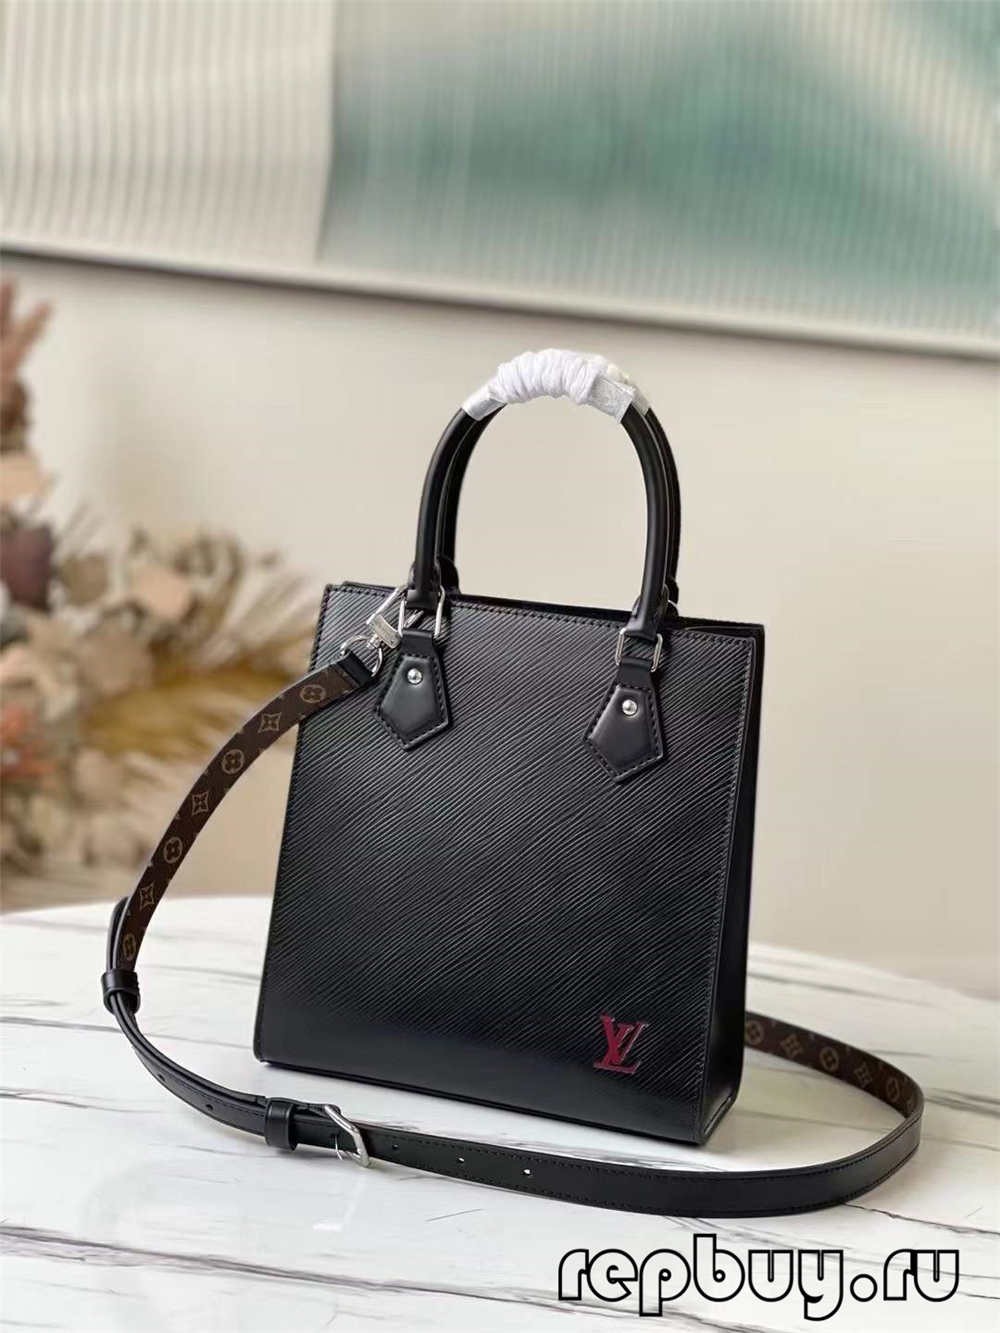 Louis Vuitton M58660 Petit Sac Plat дээд зэргийн чанартай хуулбар цүнх (2022 онд шинэчлэгдсэн)-Шилдэг чанарын хуурамч Louis Vuitton цүнх онлайн дэлгүүр, Replica дизайнер цүнх ru